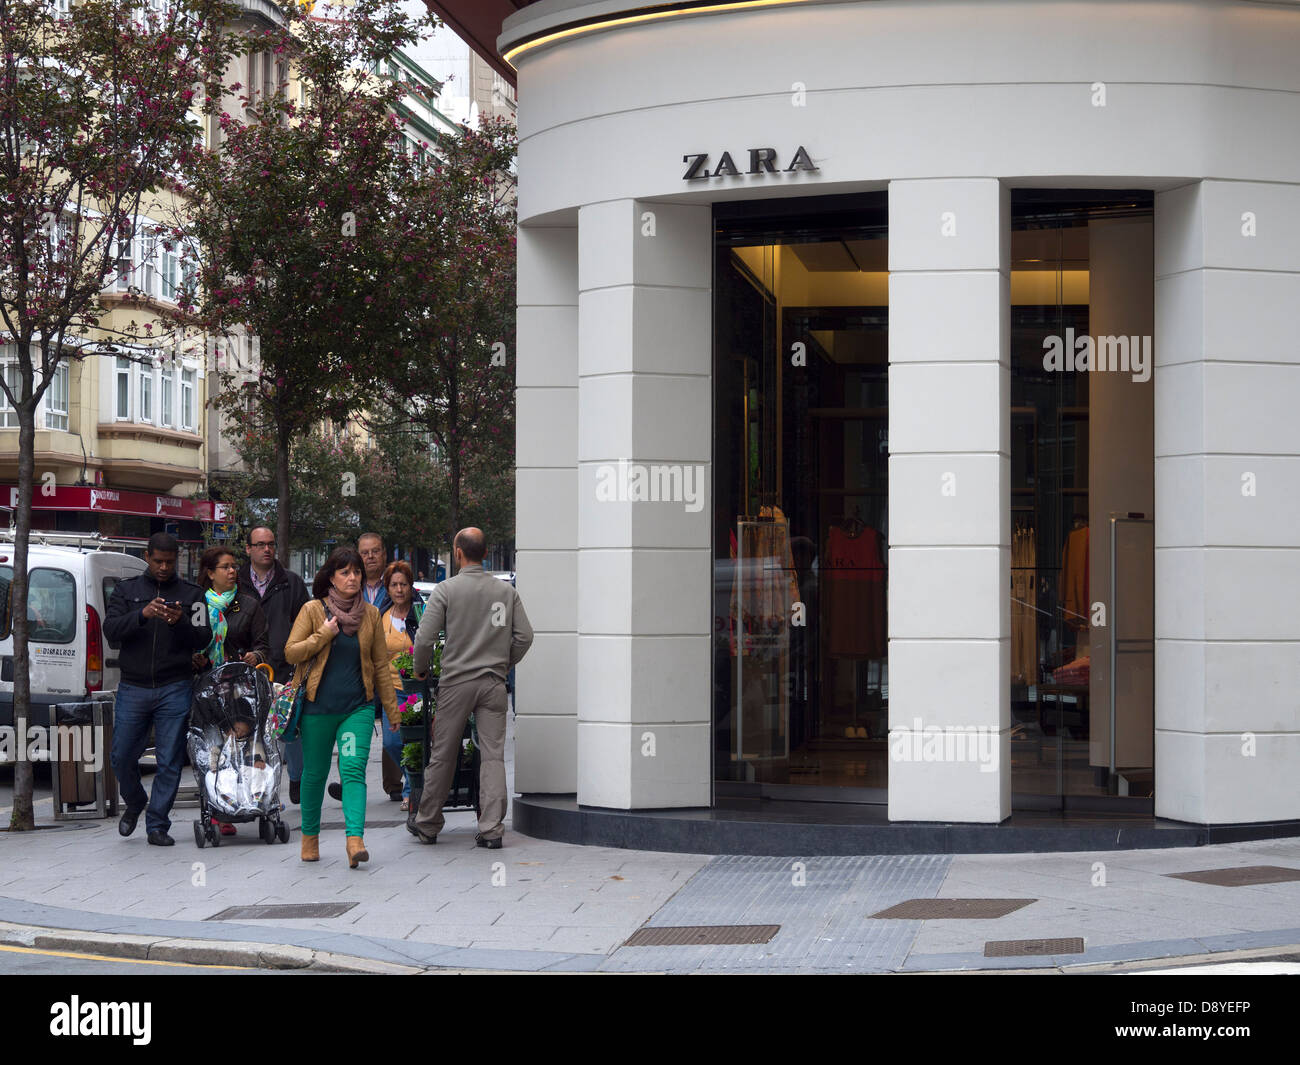 Bâtiment où la première boutique Zara dans le monde a ouvert ses portes en  1975, à La Corogne, Galice, Espagne, Europe Photo Stock - Alamy